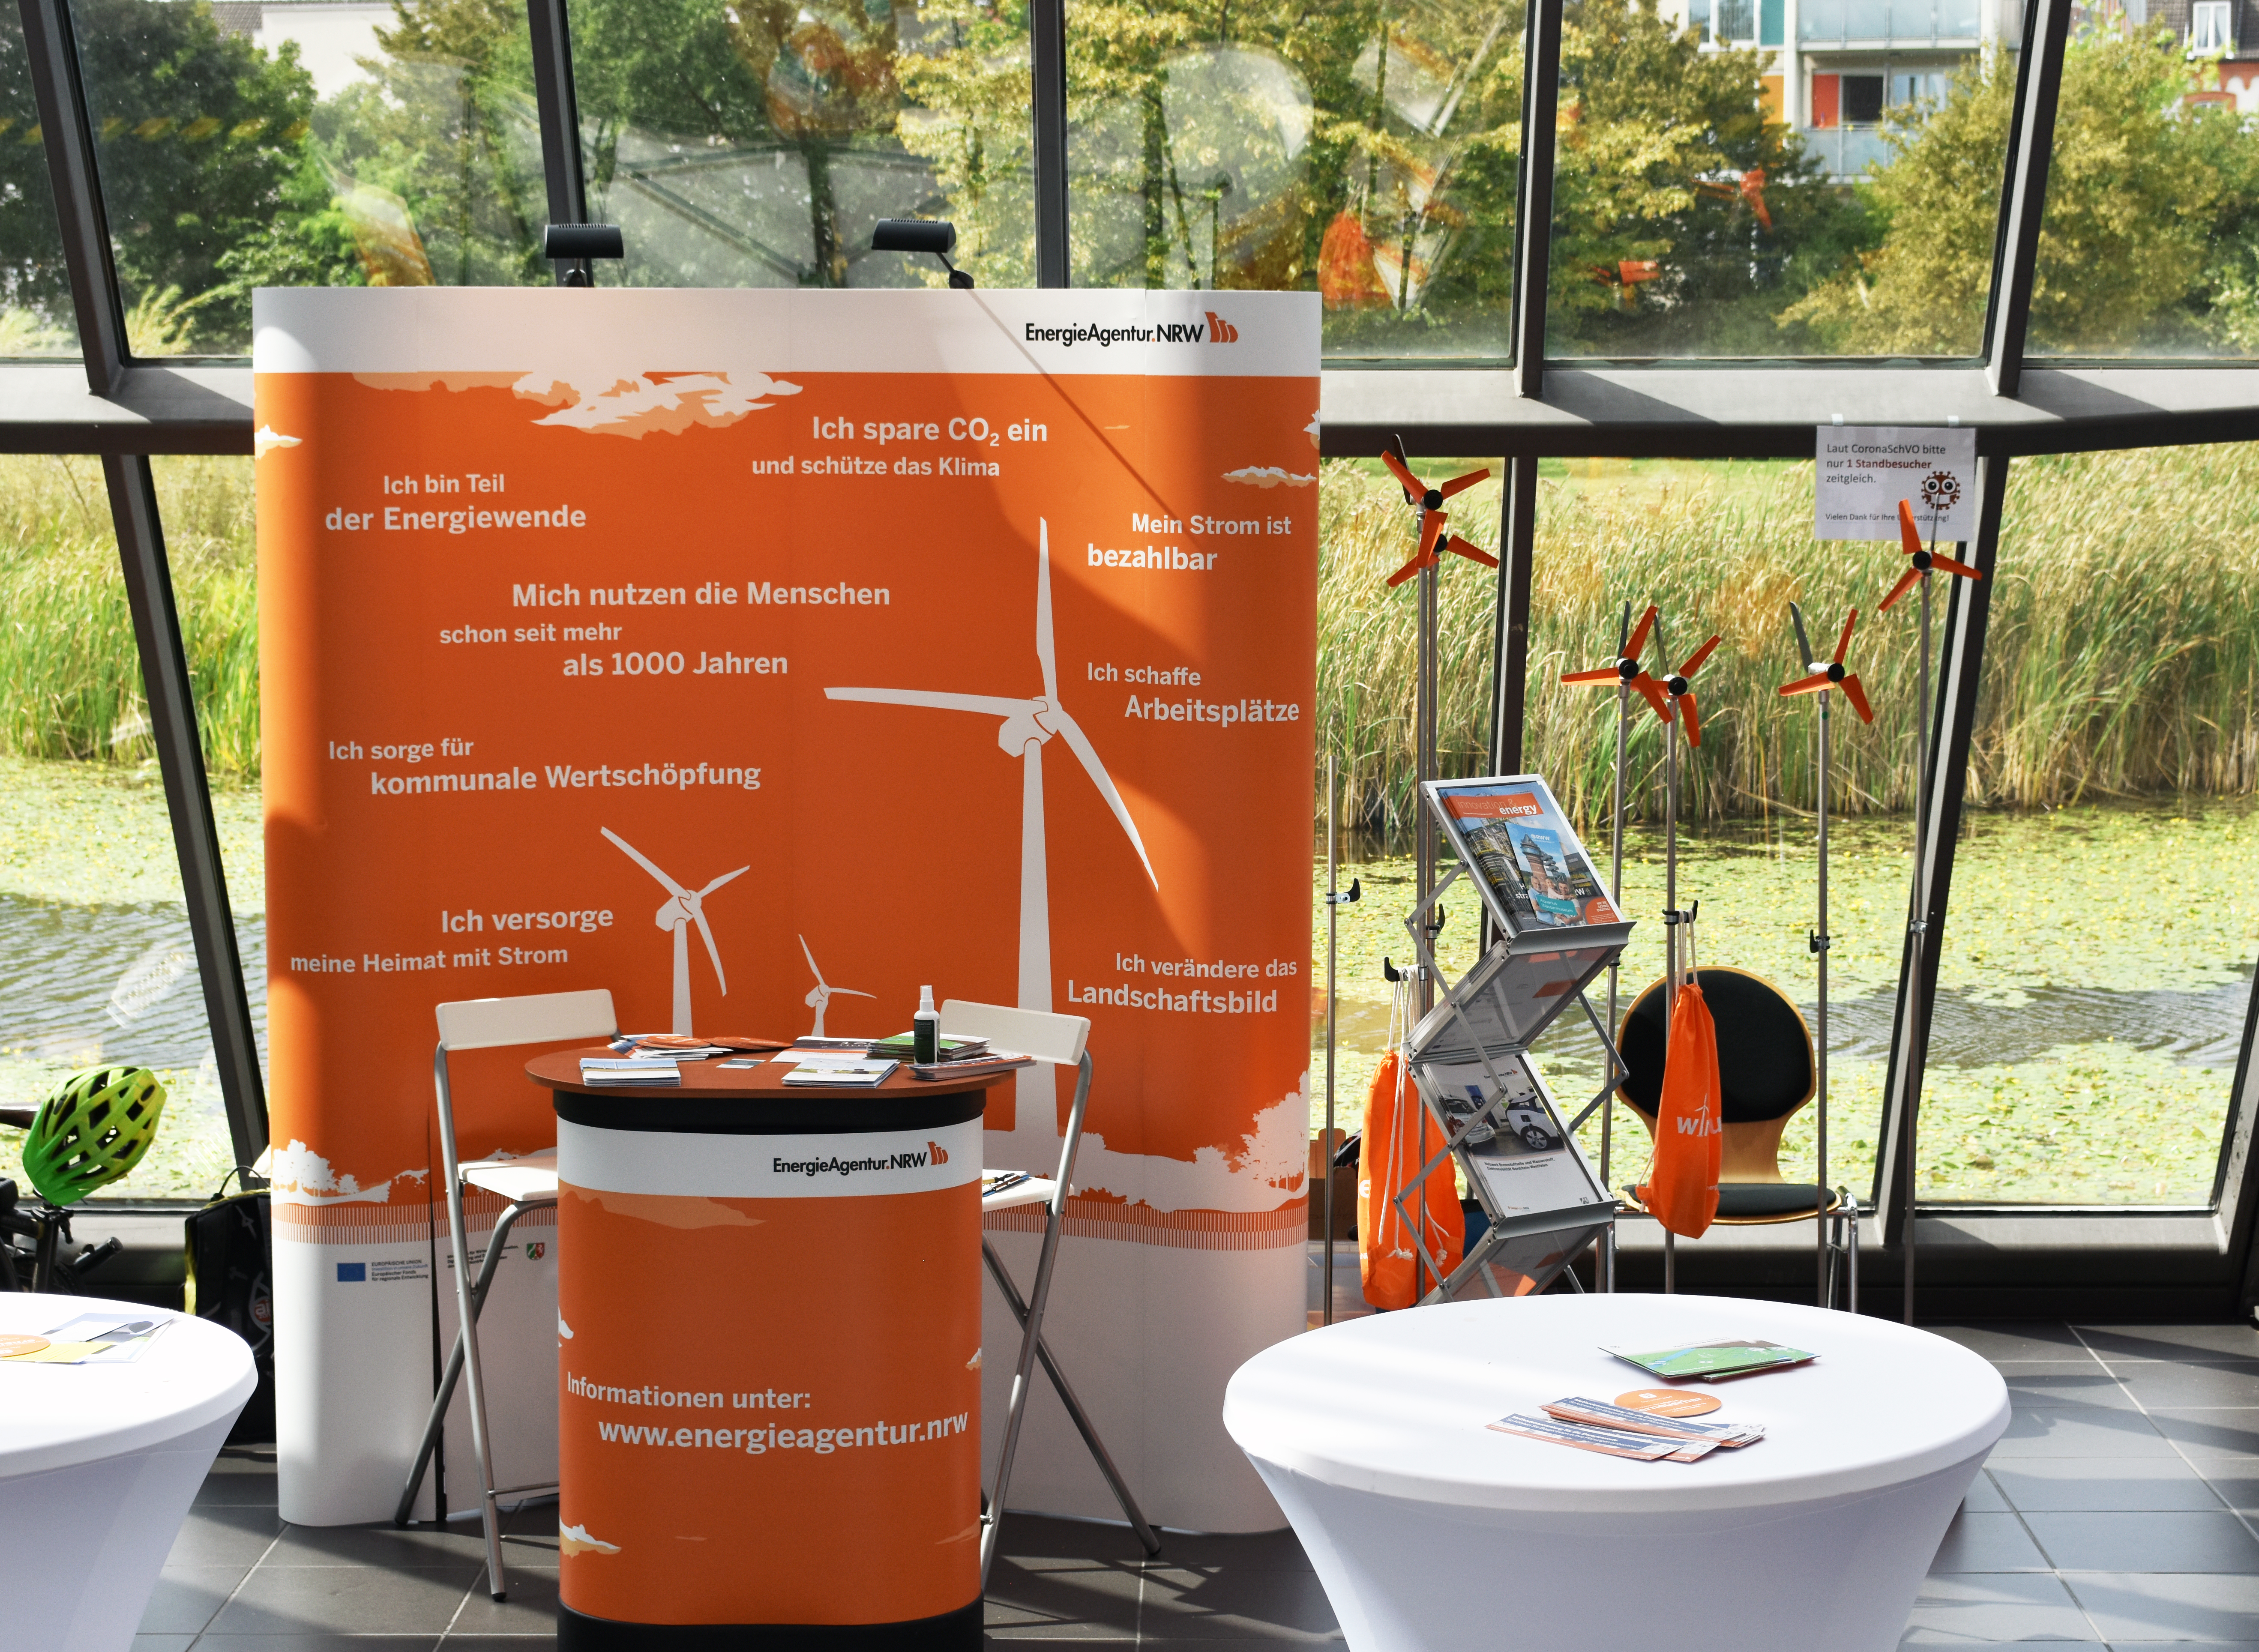 Foto: Infostand der EnergieAgentur.NRW im Wissenschaftspark.